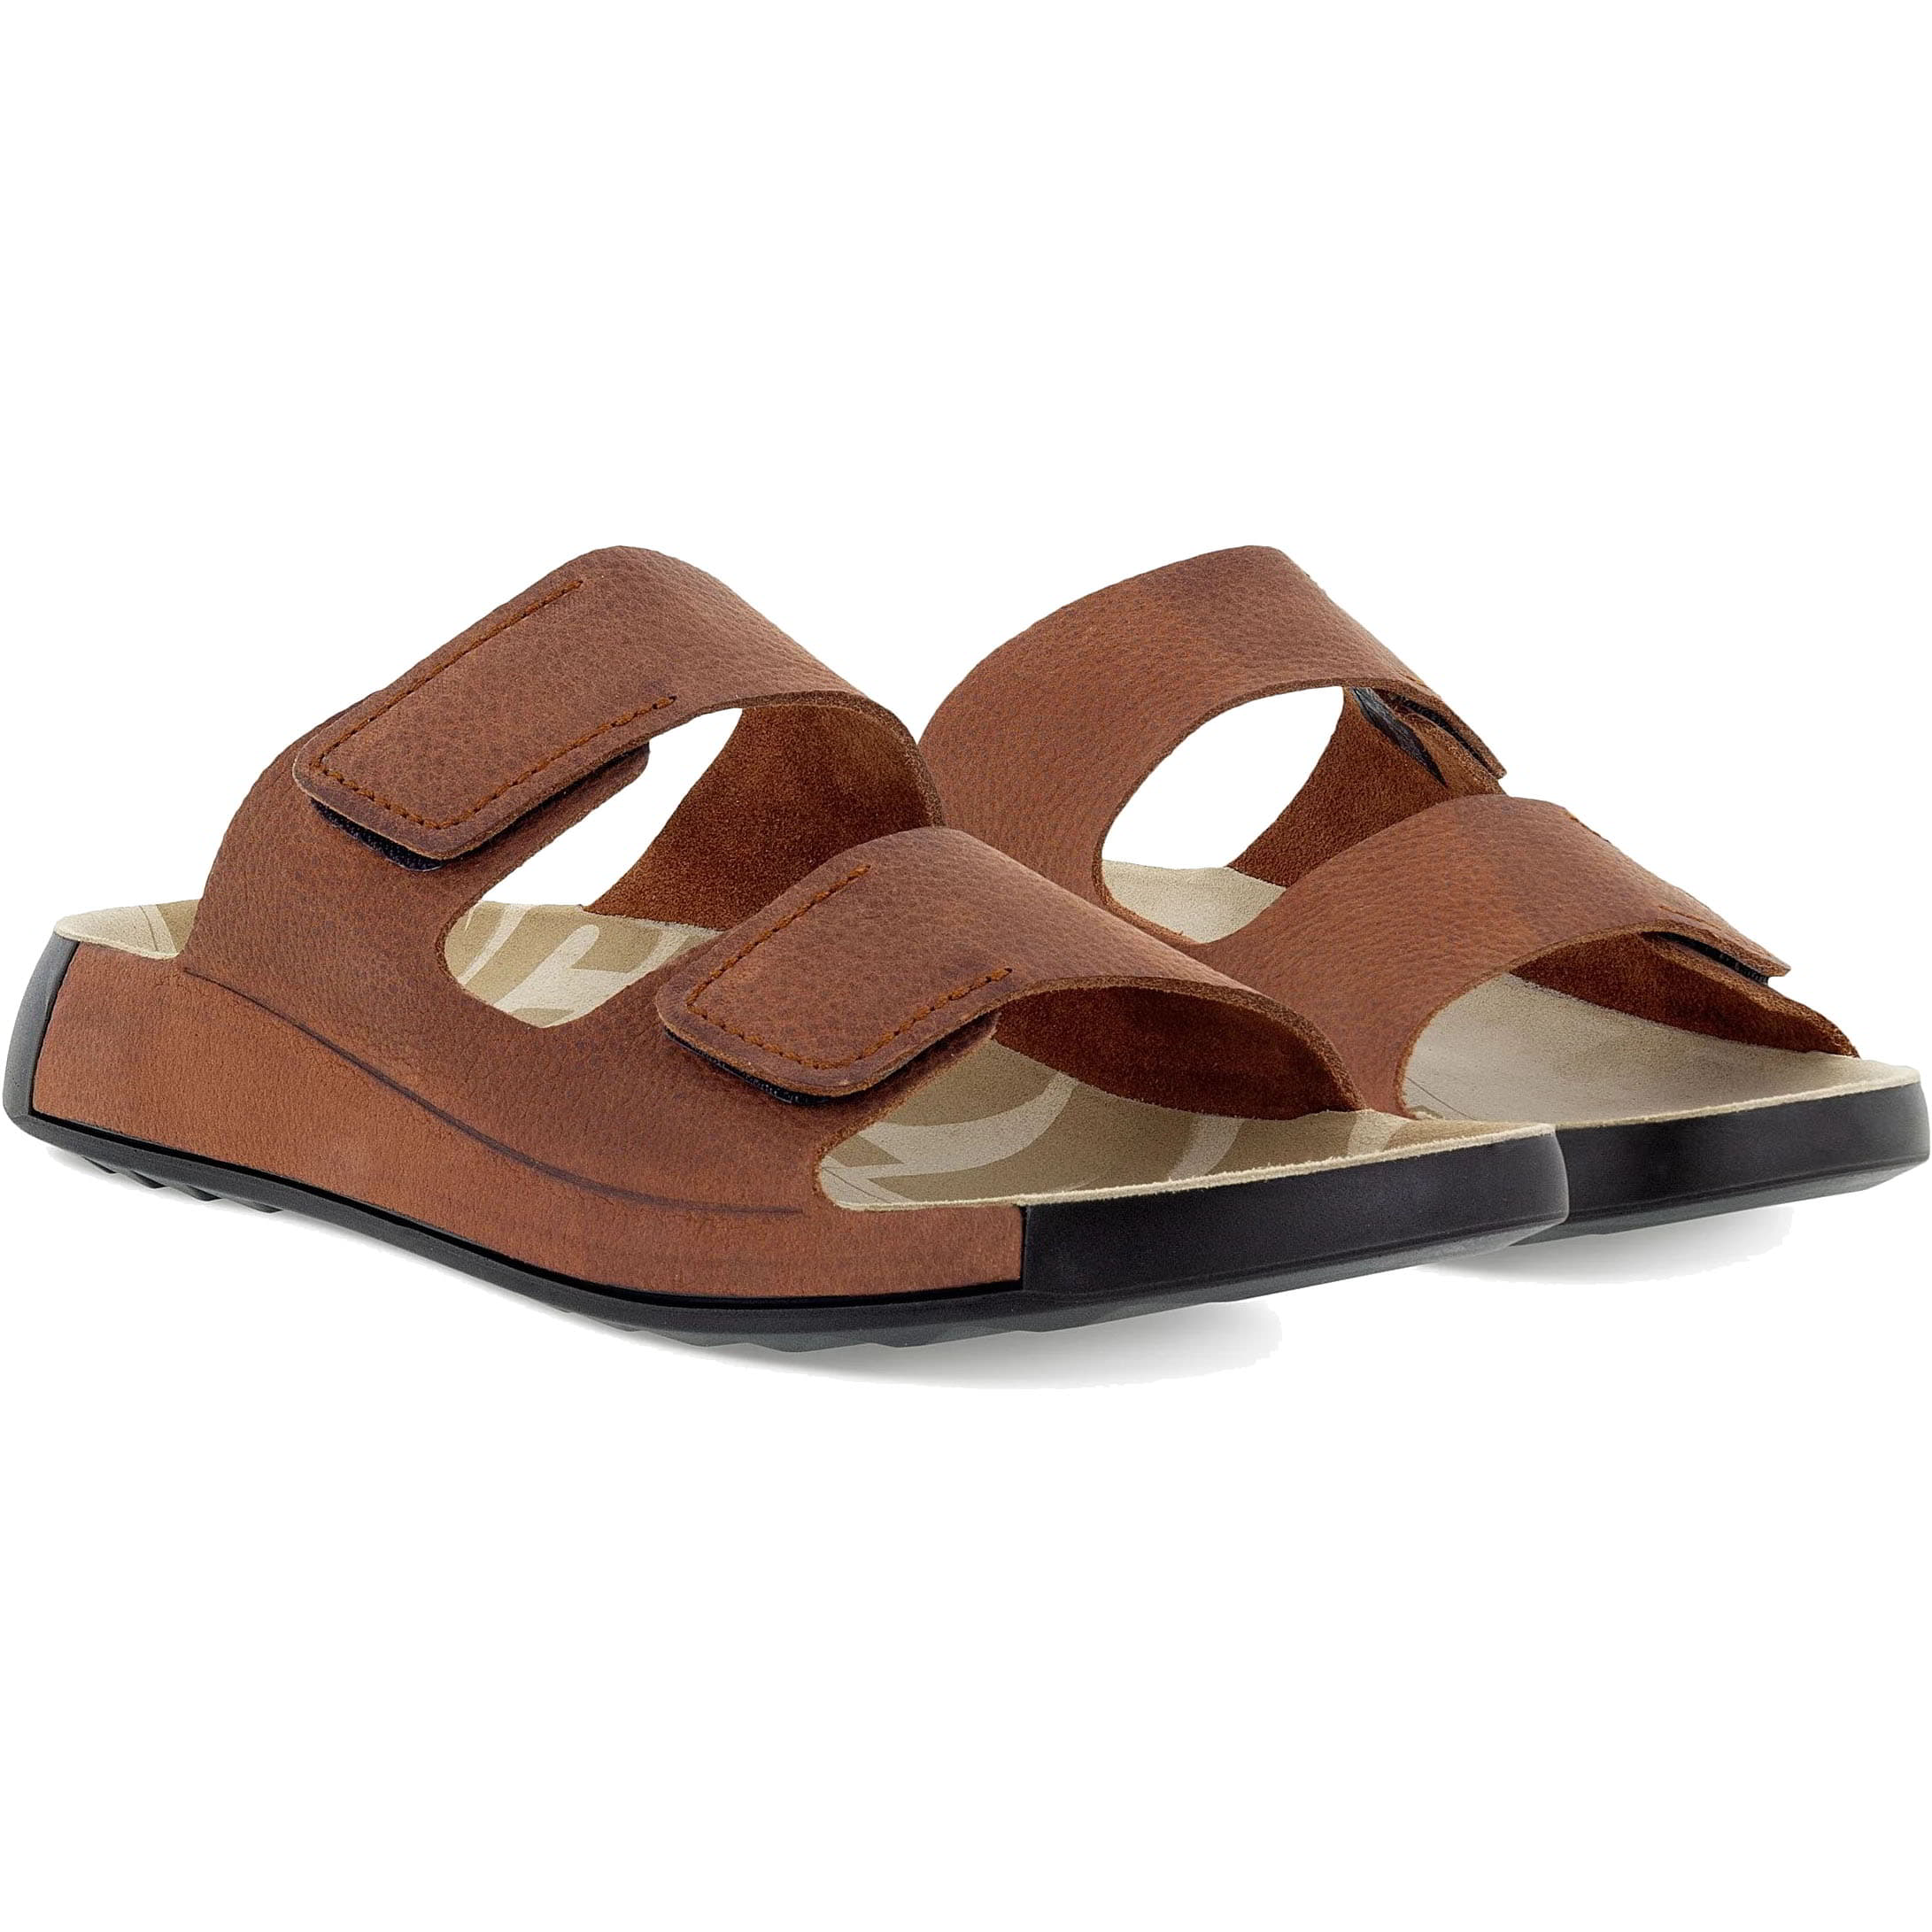 Ecco Shoes Mens 2nd Cozmo Adjustable Slide Sandals - UK 9/9.5 / EU 43 Brown 2951